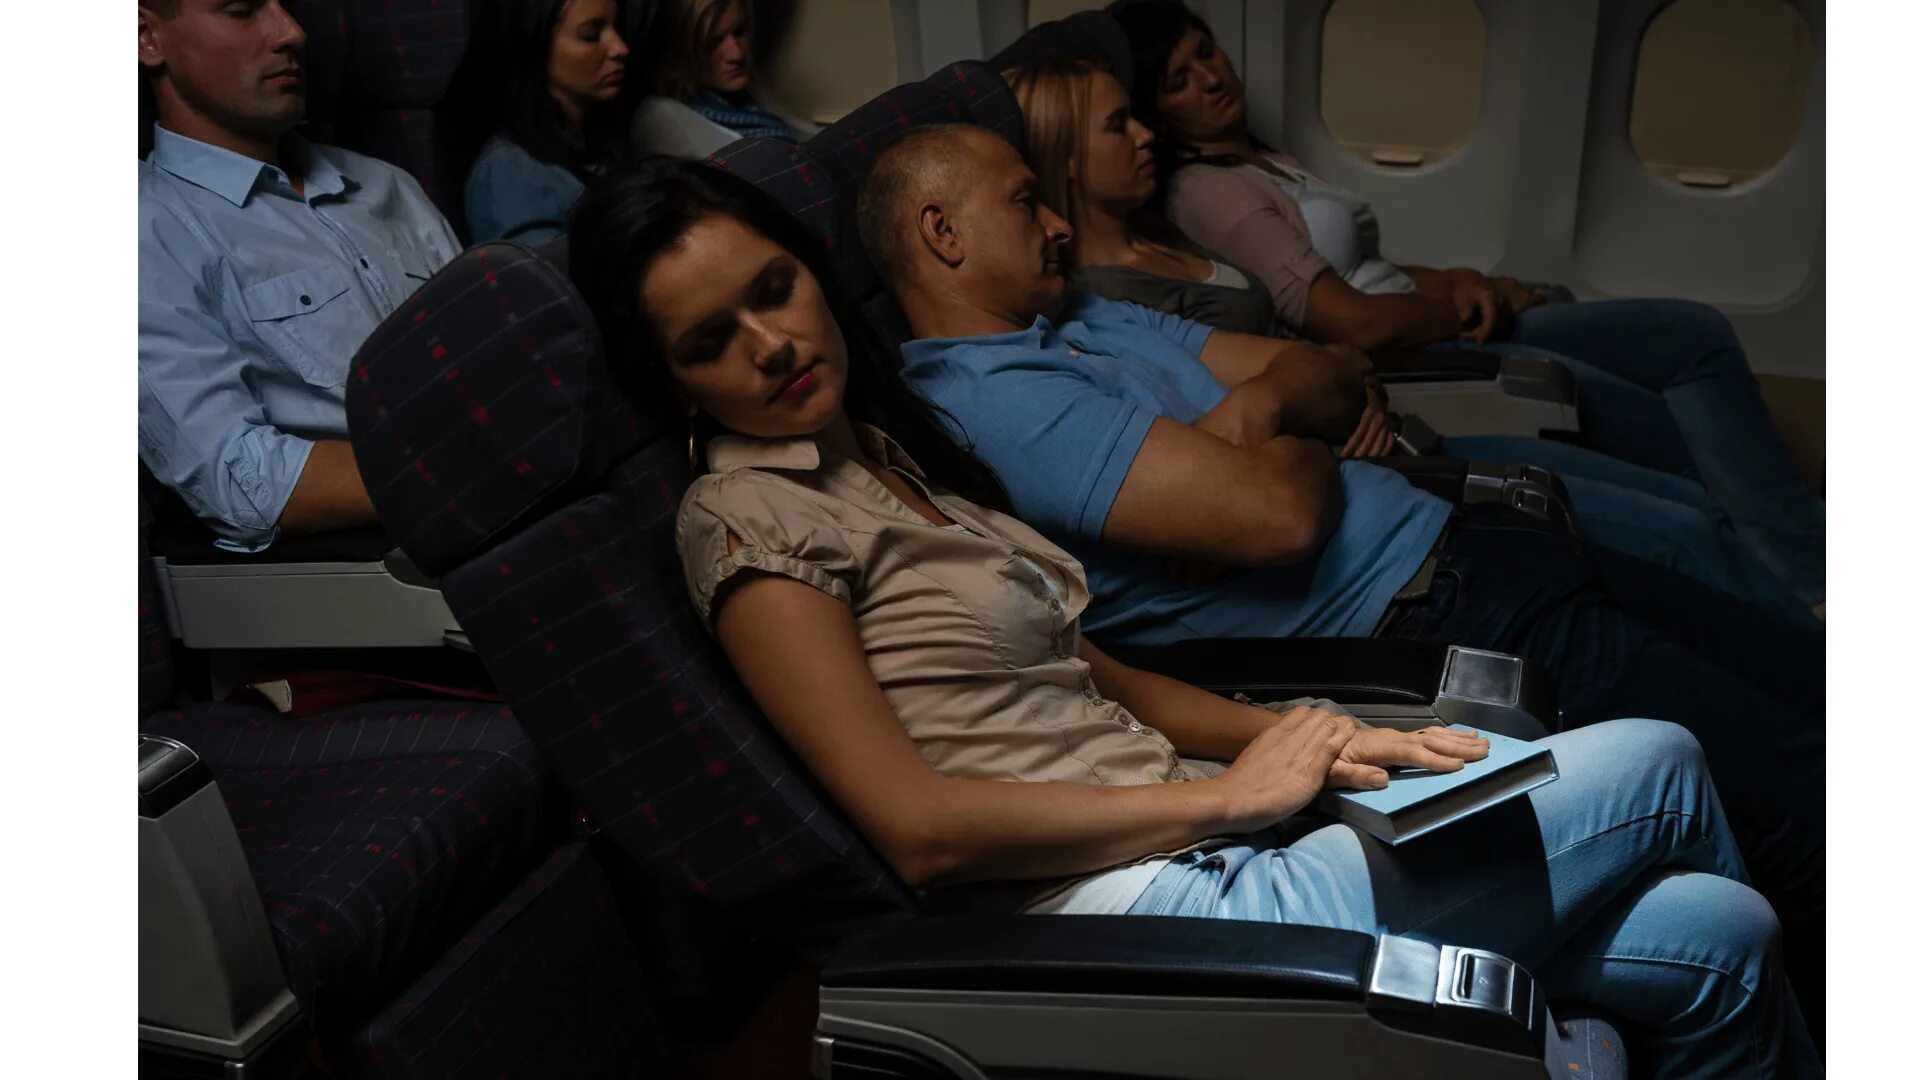 I get on the plane. Самолет с пассажиром. Девушка в самолете. Пассажиры в самолете спят.